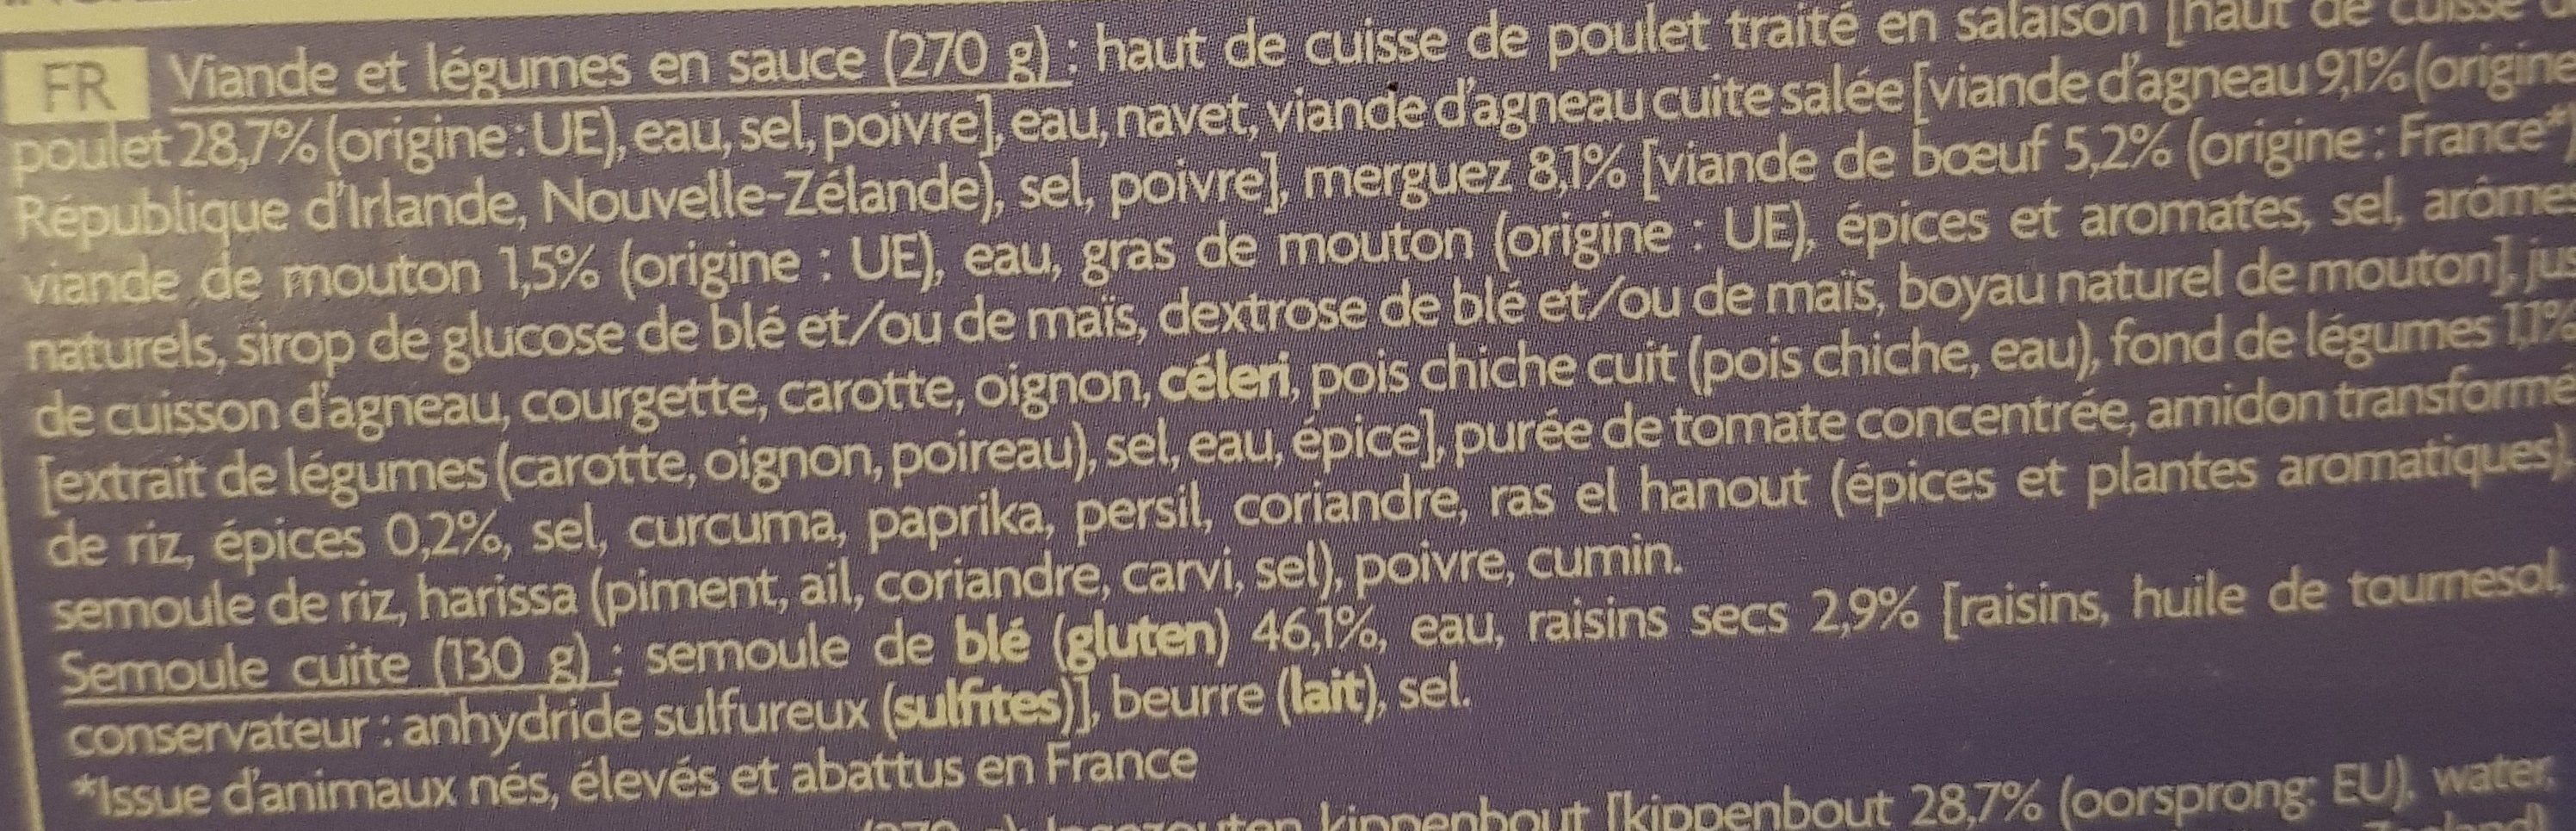 Couscous Royal - المكونات - fr